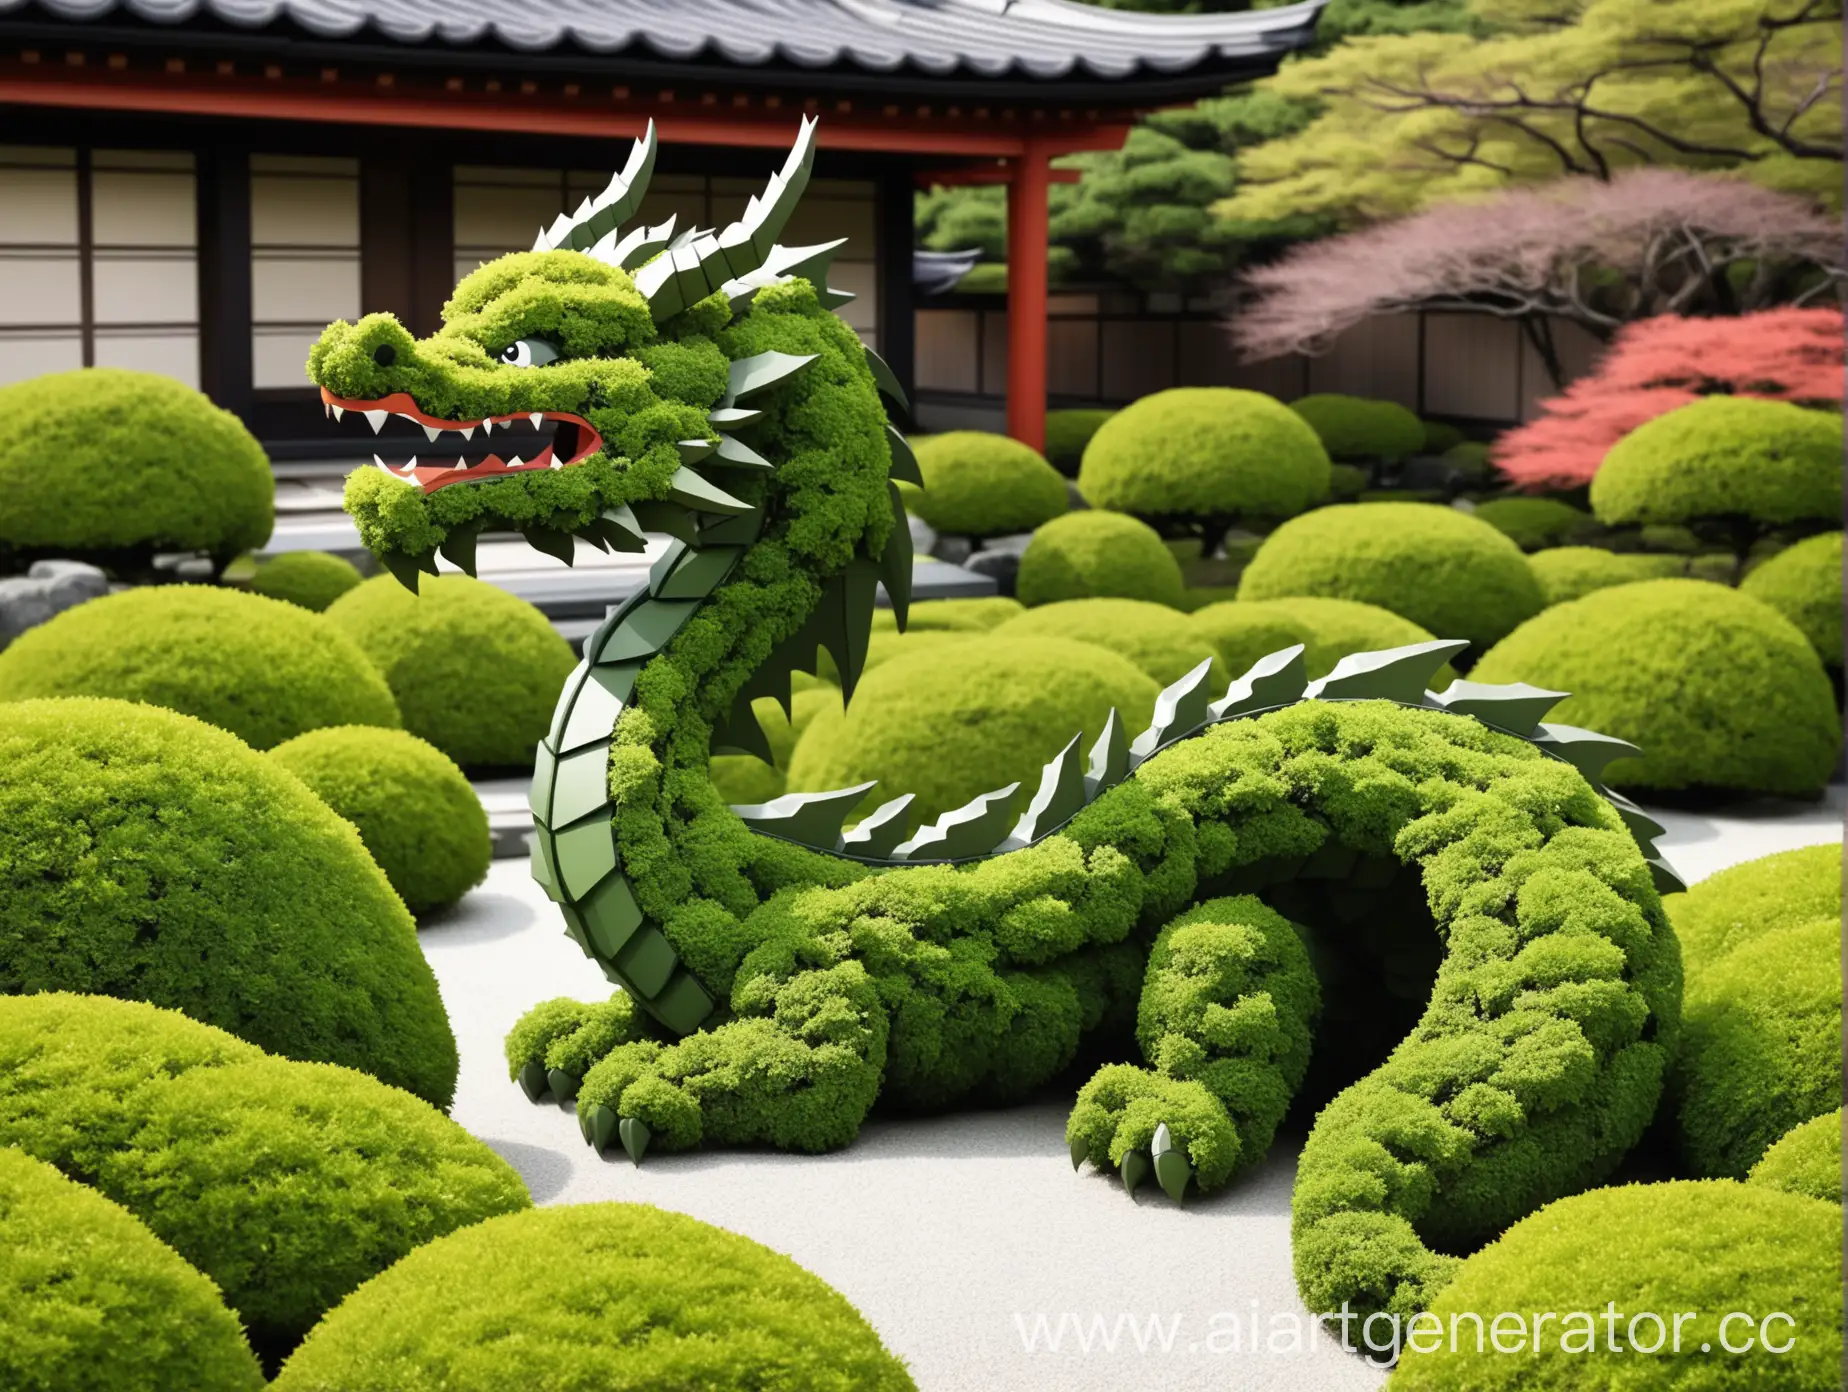 арт обьект в виде дракона из стриженных кустов в минималистичном мультяшном стиле для японского сада